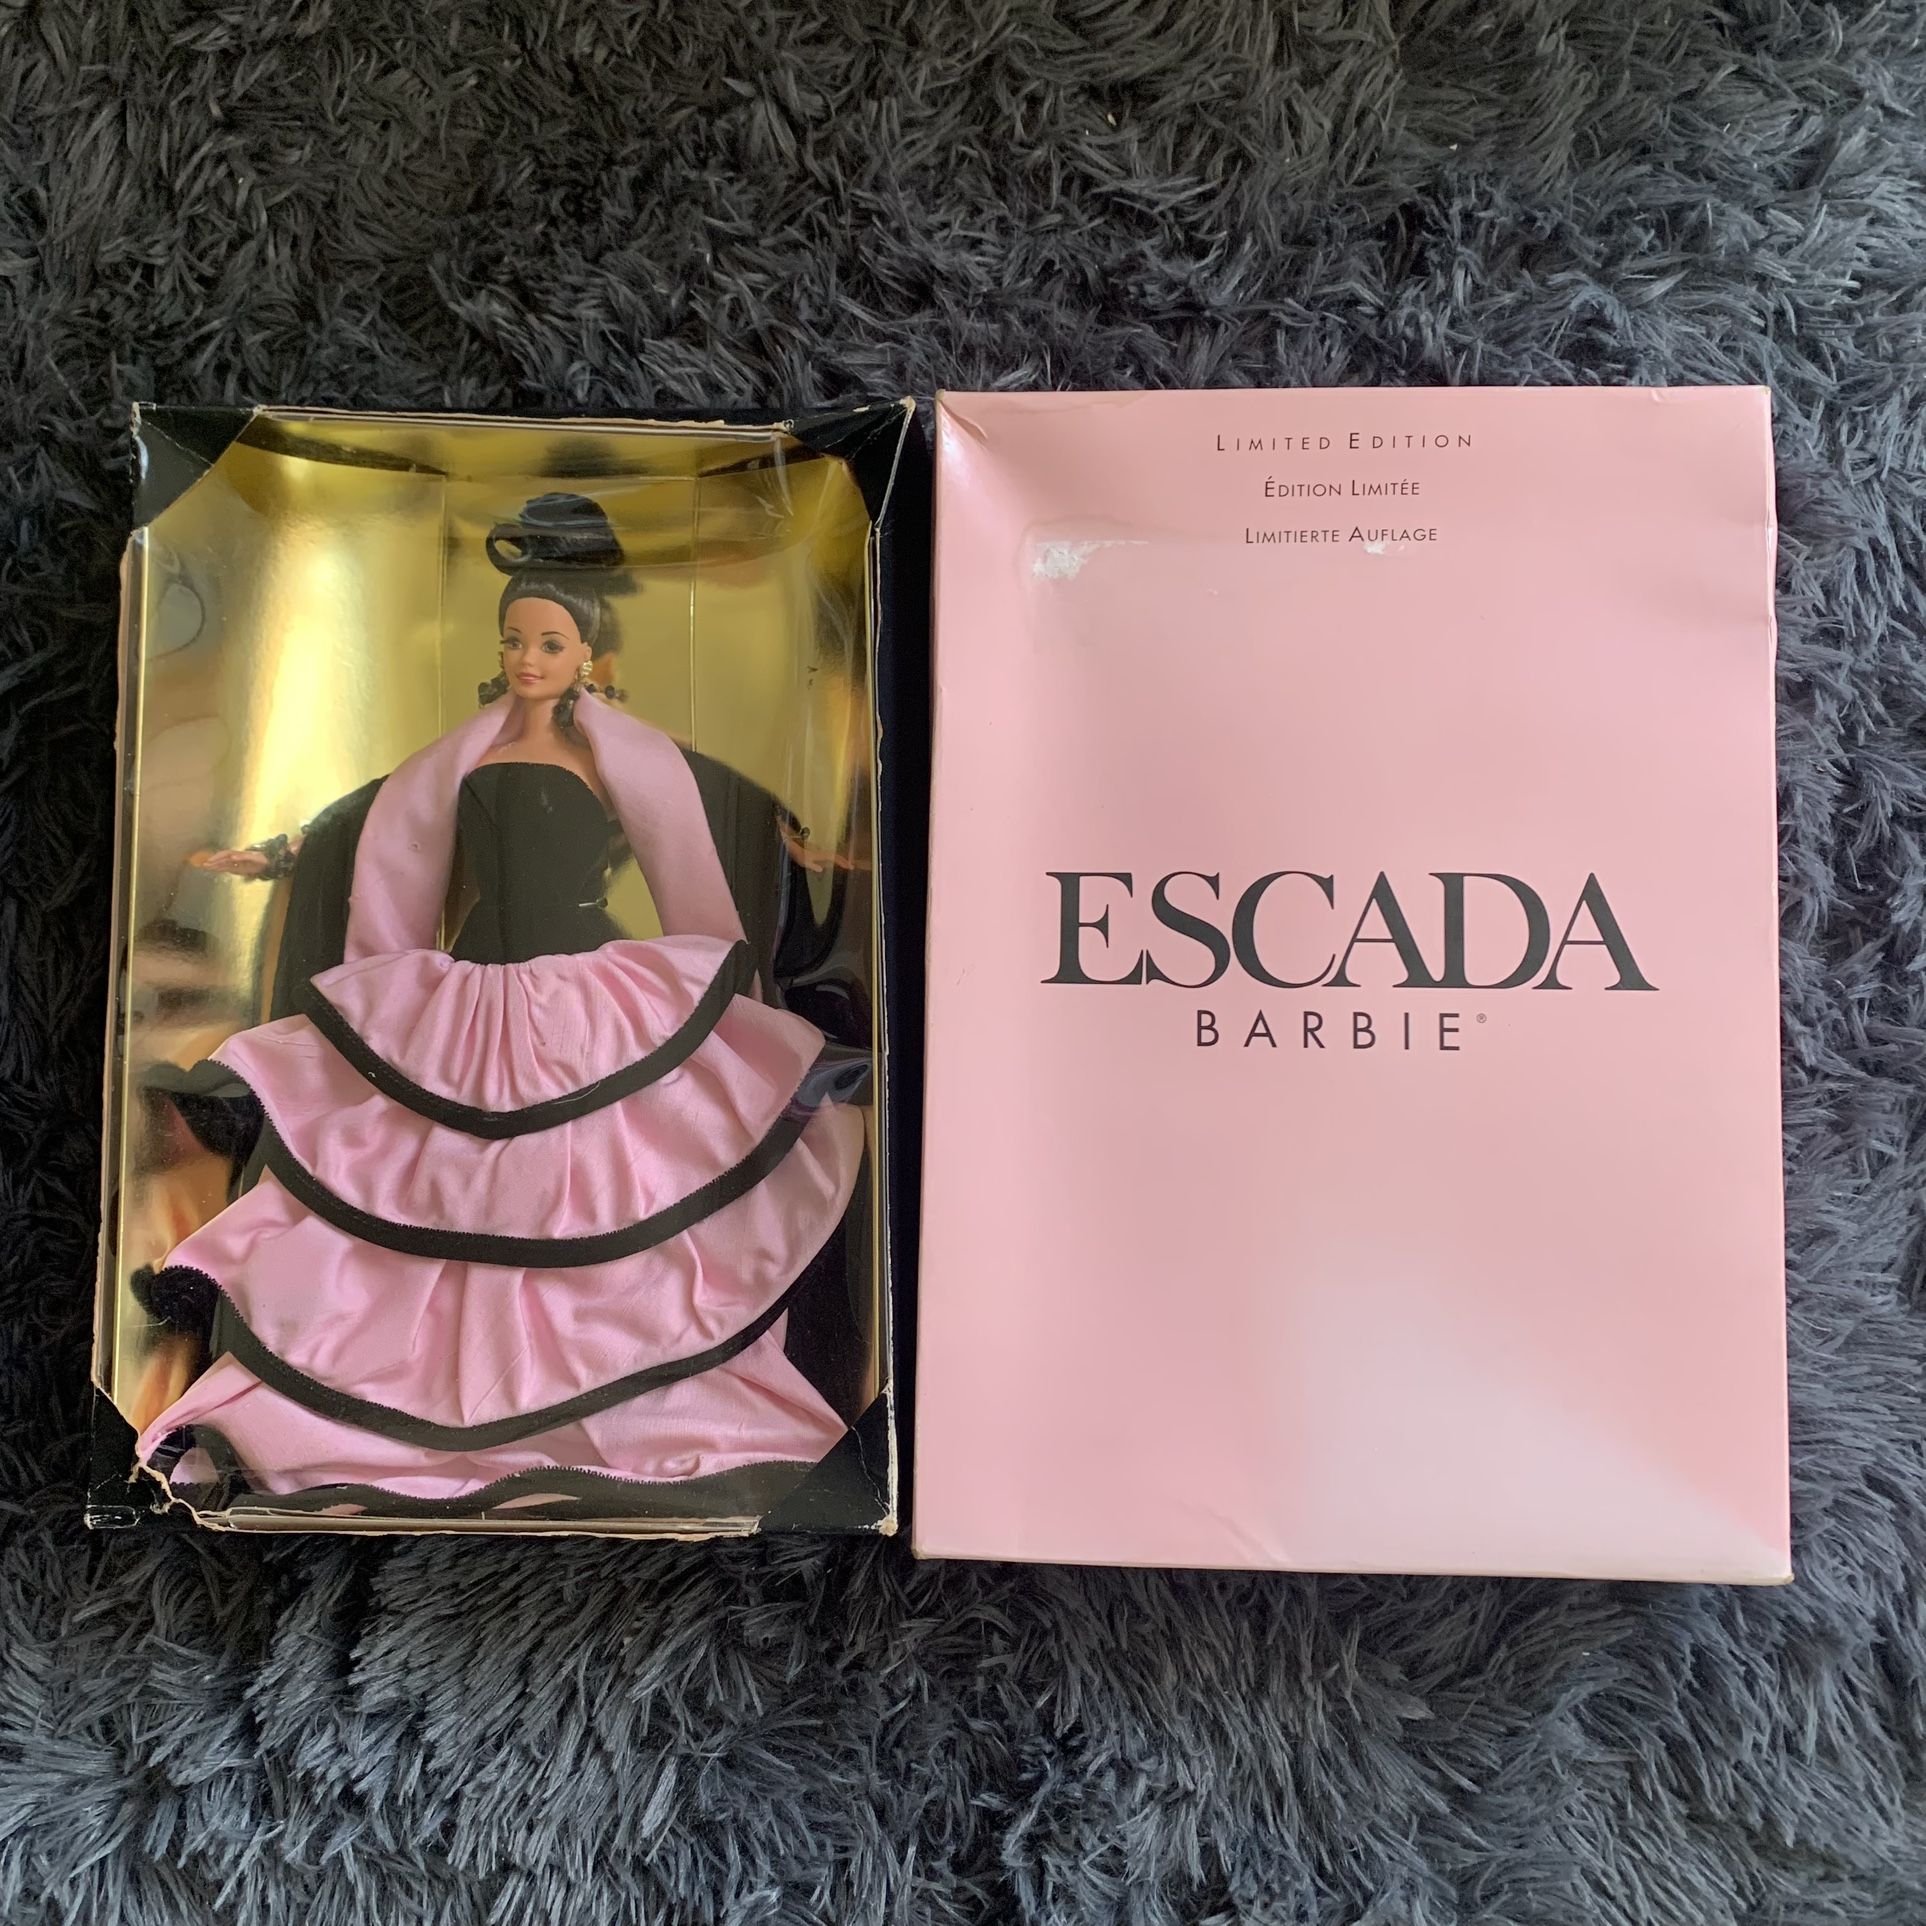 1996 Escada Barbie Doll Limited Edition